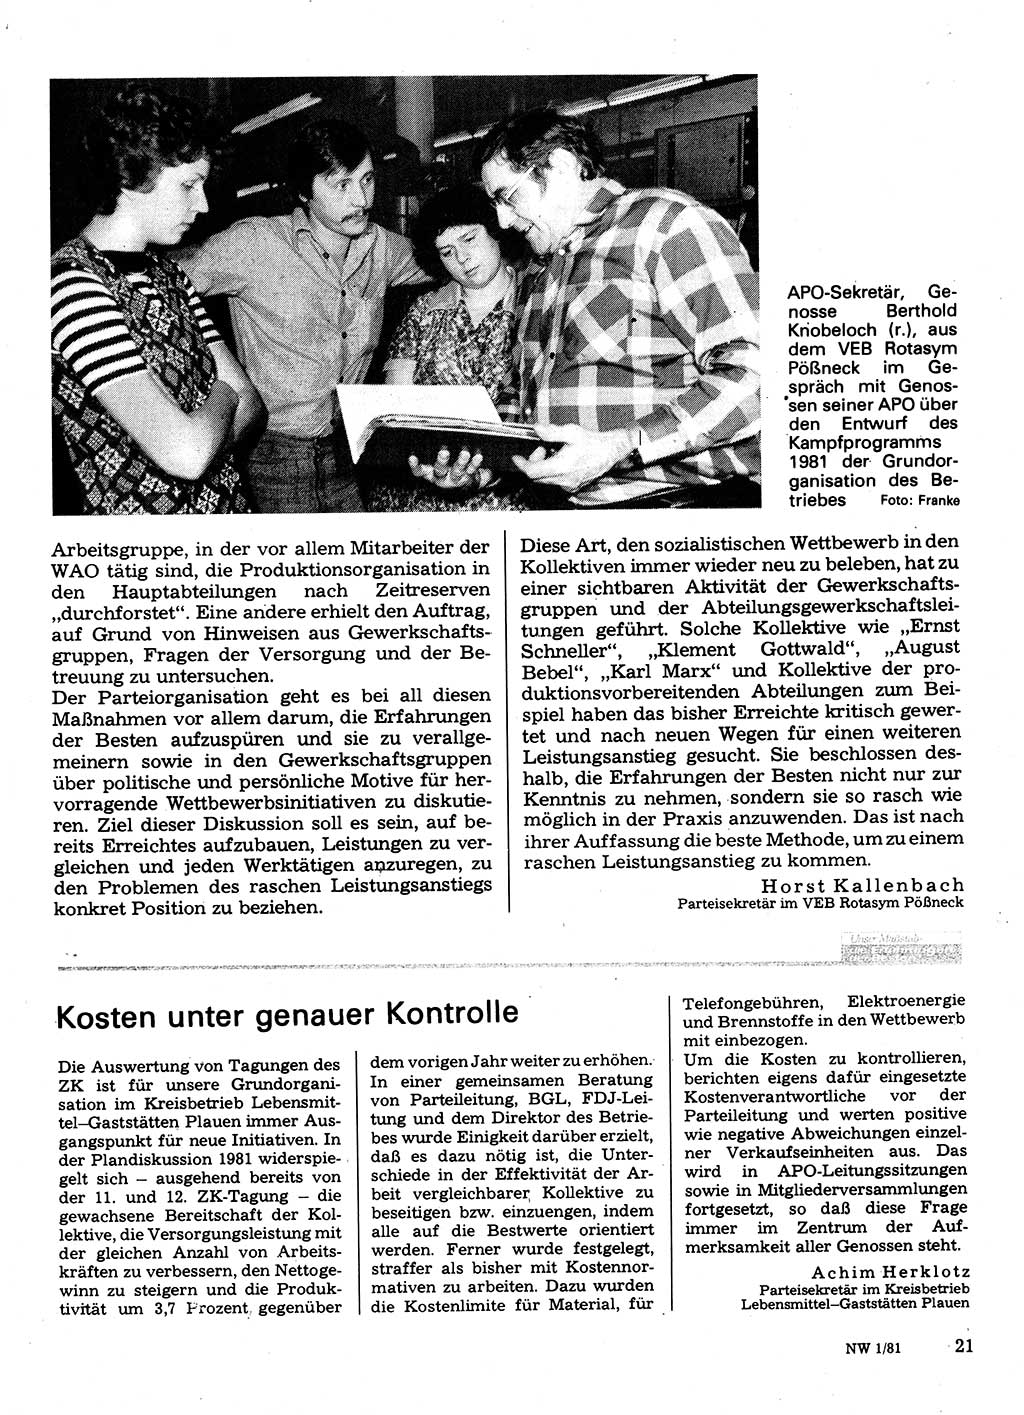 Neuer Weg (NW), Organ des Zentralkomitees (ZK) der SED (Sozialistische Einheitspartei Deutschlands) für Fragen des Parteilebens, 36. Jahrgang [Deutsche Demokratische Republik (DDR)] 1981, Seite 21 (NW ZK SED DDR 1981, S. 21)